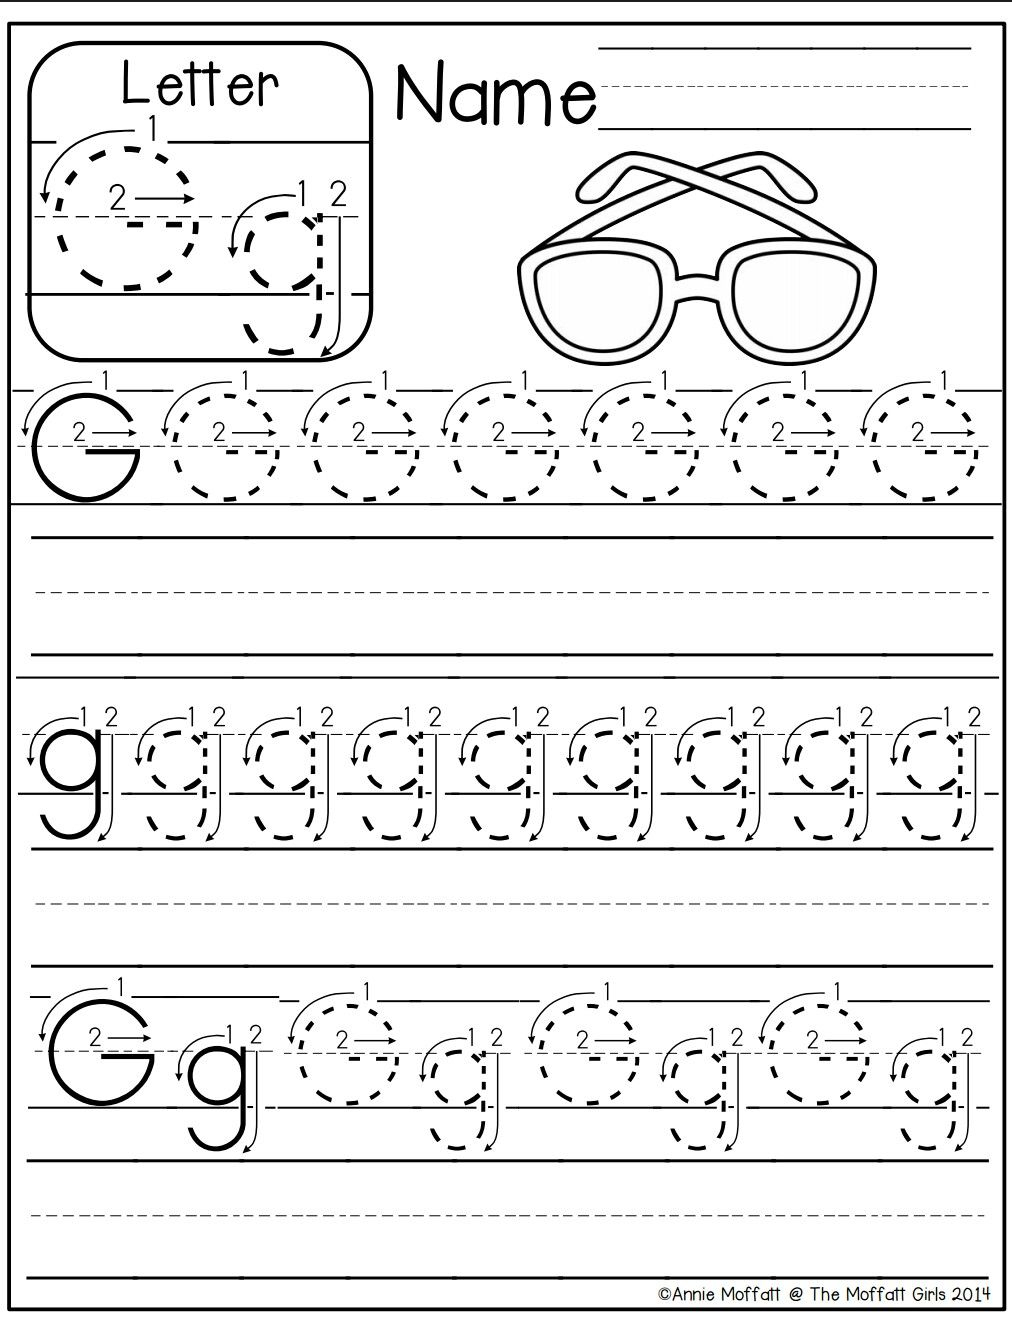 Letter G Worksheet | Preschool Writing, Letter G Worksheets with Letter G Worksheets For Kinder